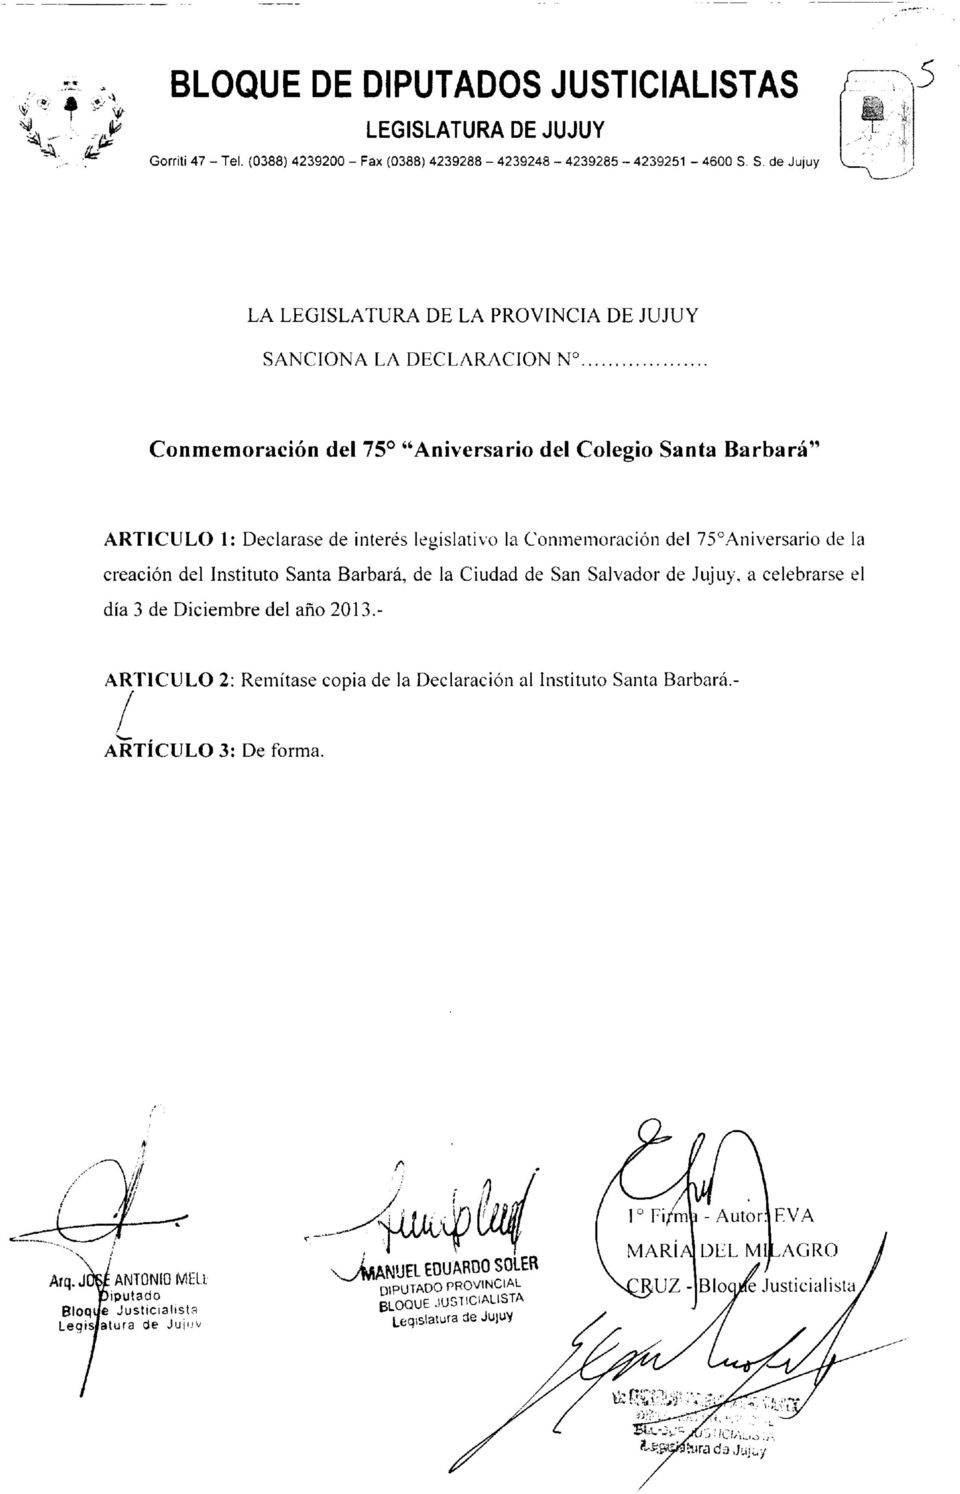 legislativo la Conmemoración del 75 Aniversario de la creación del Instituto Santa Barbará, de la Ciudad de San Salvador de Jujuy, a celebrarse el día 3 de Diciembre del año